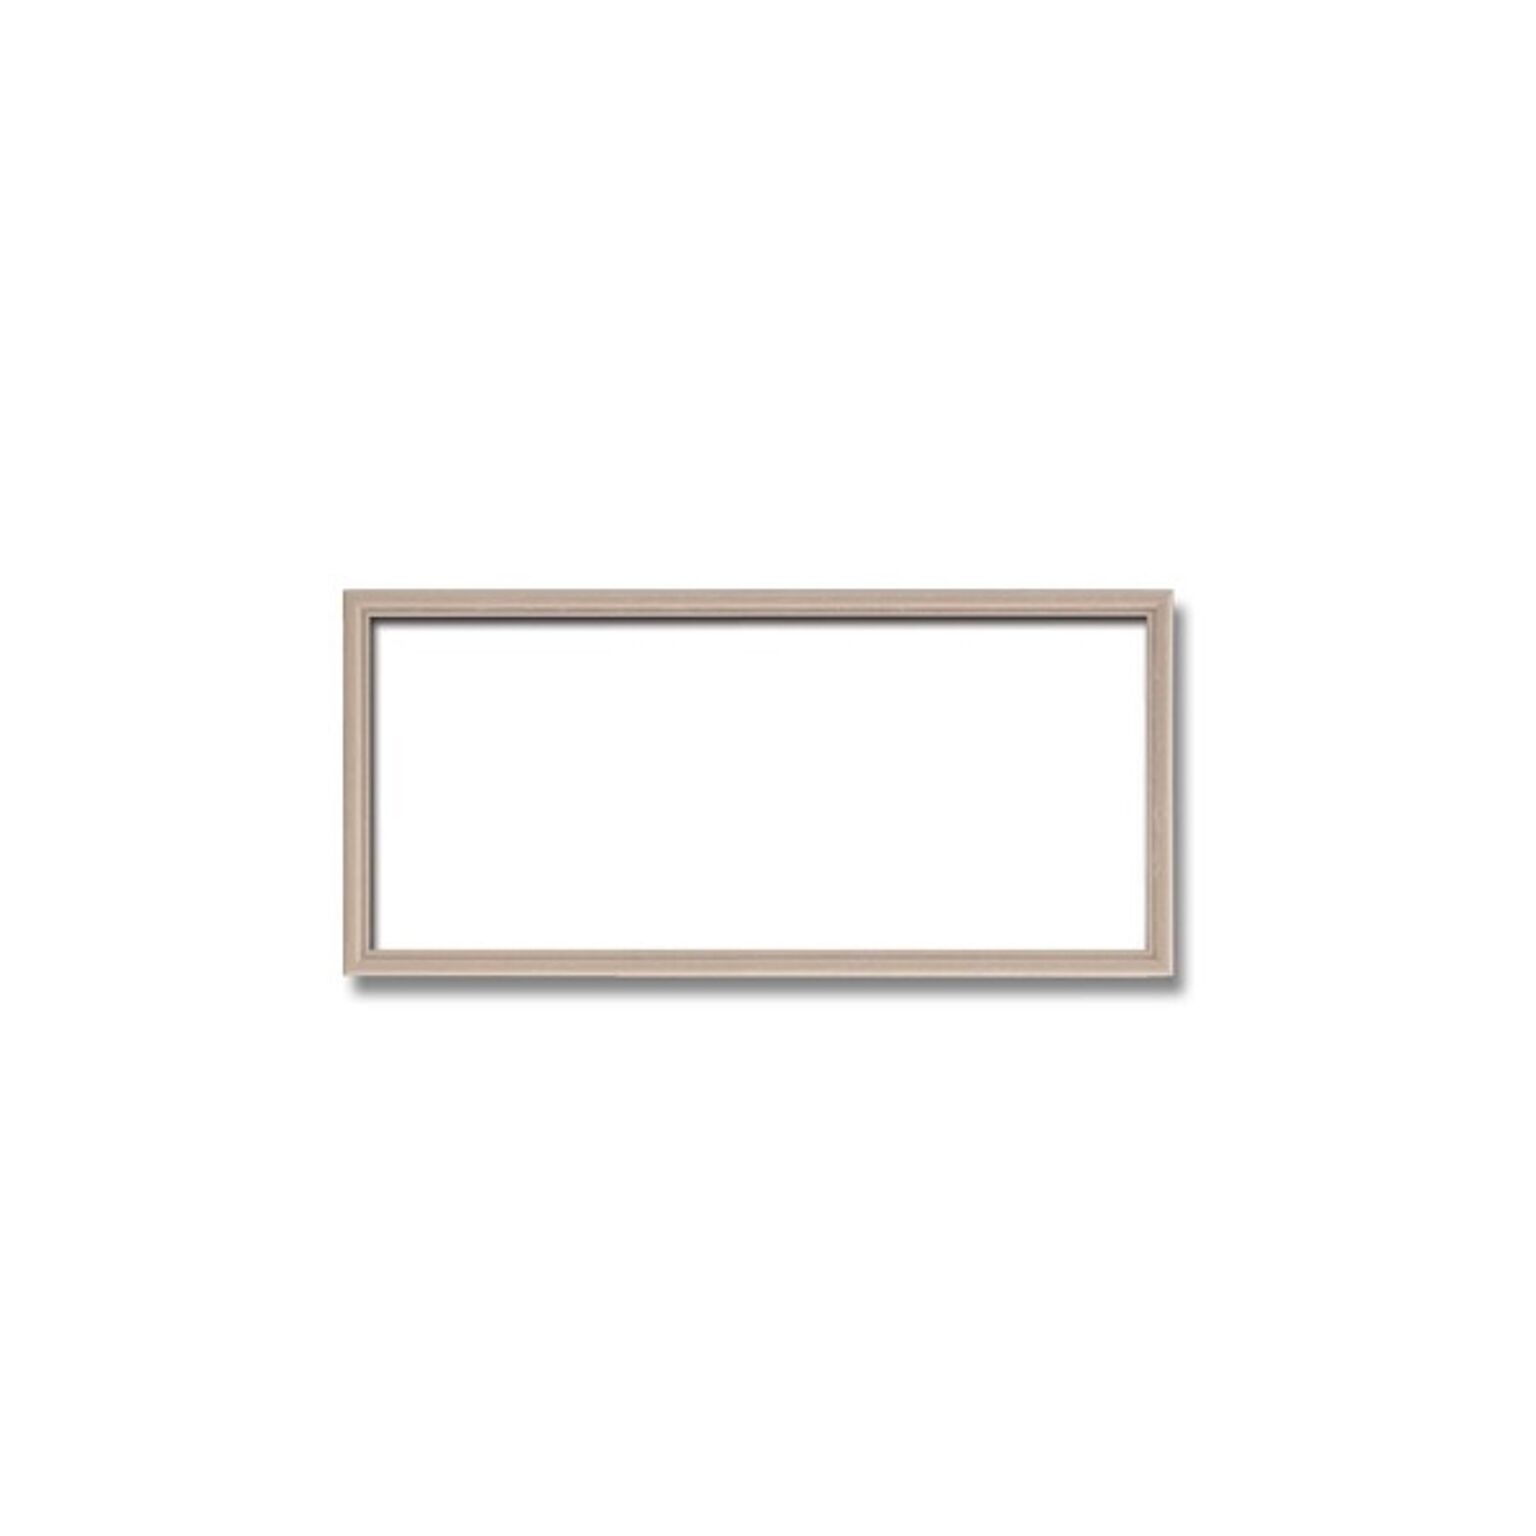 【長方形額】木製額 縦横兼用額 カラー4色展開 ■カラー長方形額（300×150mm）ピンクベージュ